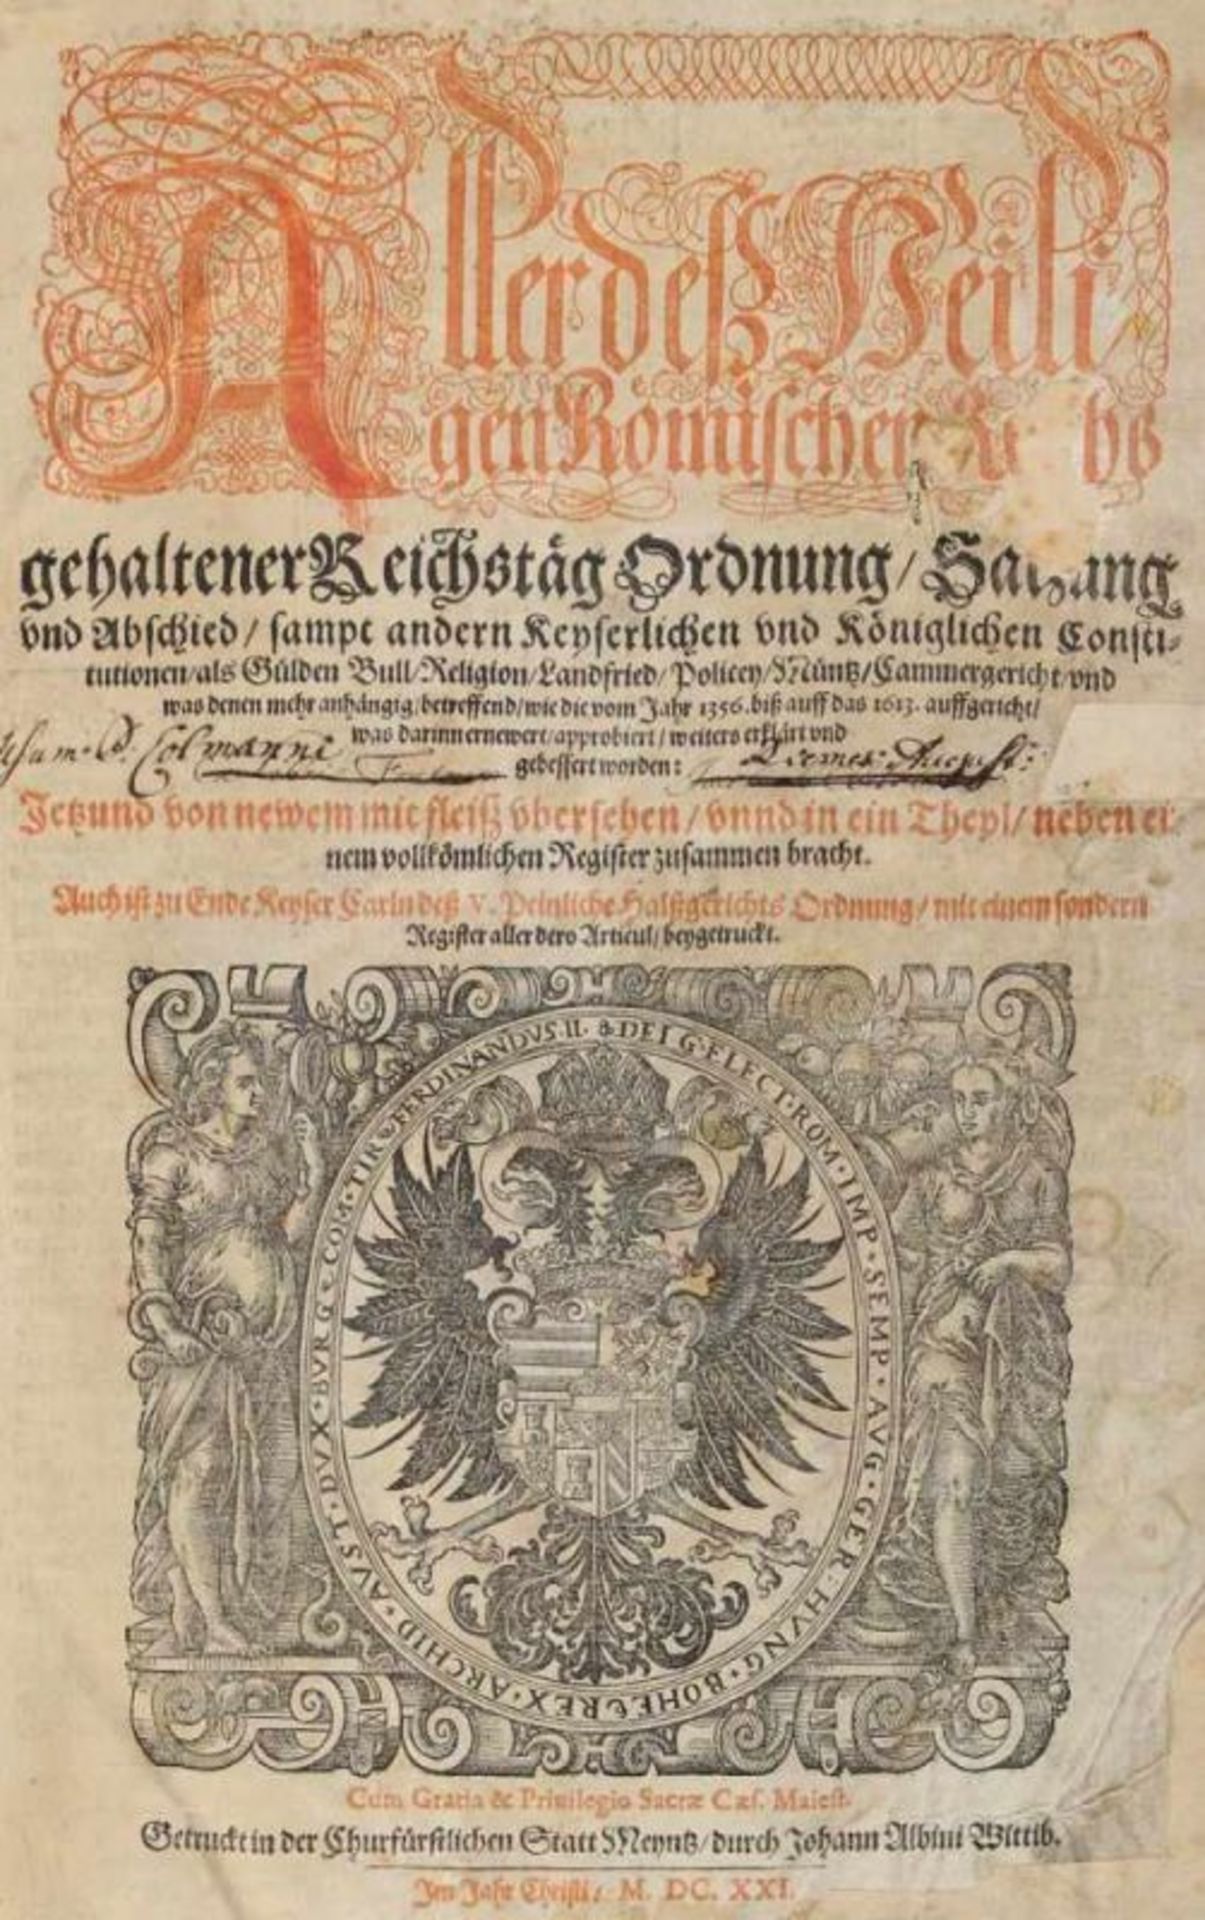 Aller deß Heiligen Römischen Reichsgehaltener Reichstäg Ordnung, Satzung und Abschied, sampt